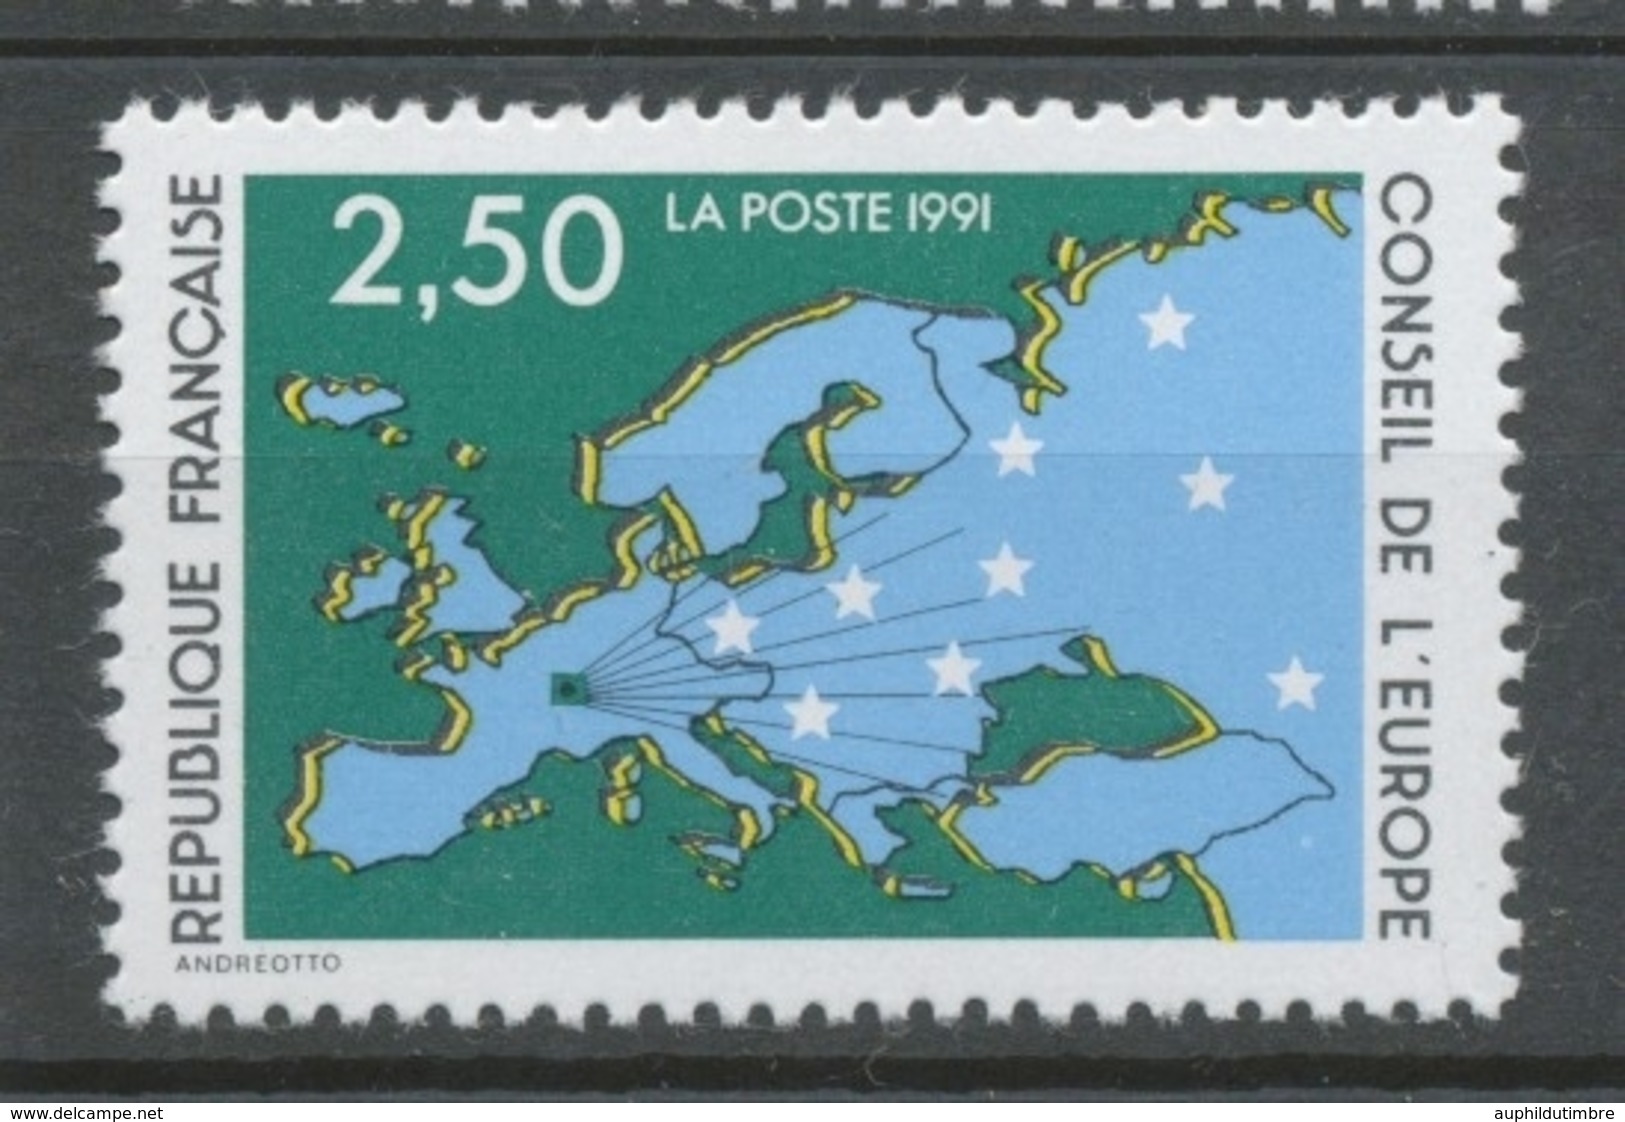 Service N°106 Conseil De L' Europe. 2f.50  Multicolore ZS106 - Nuevos